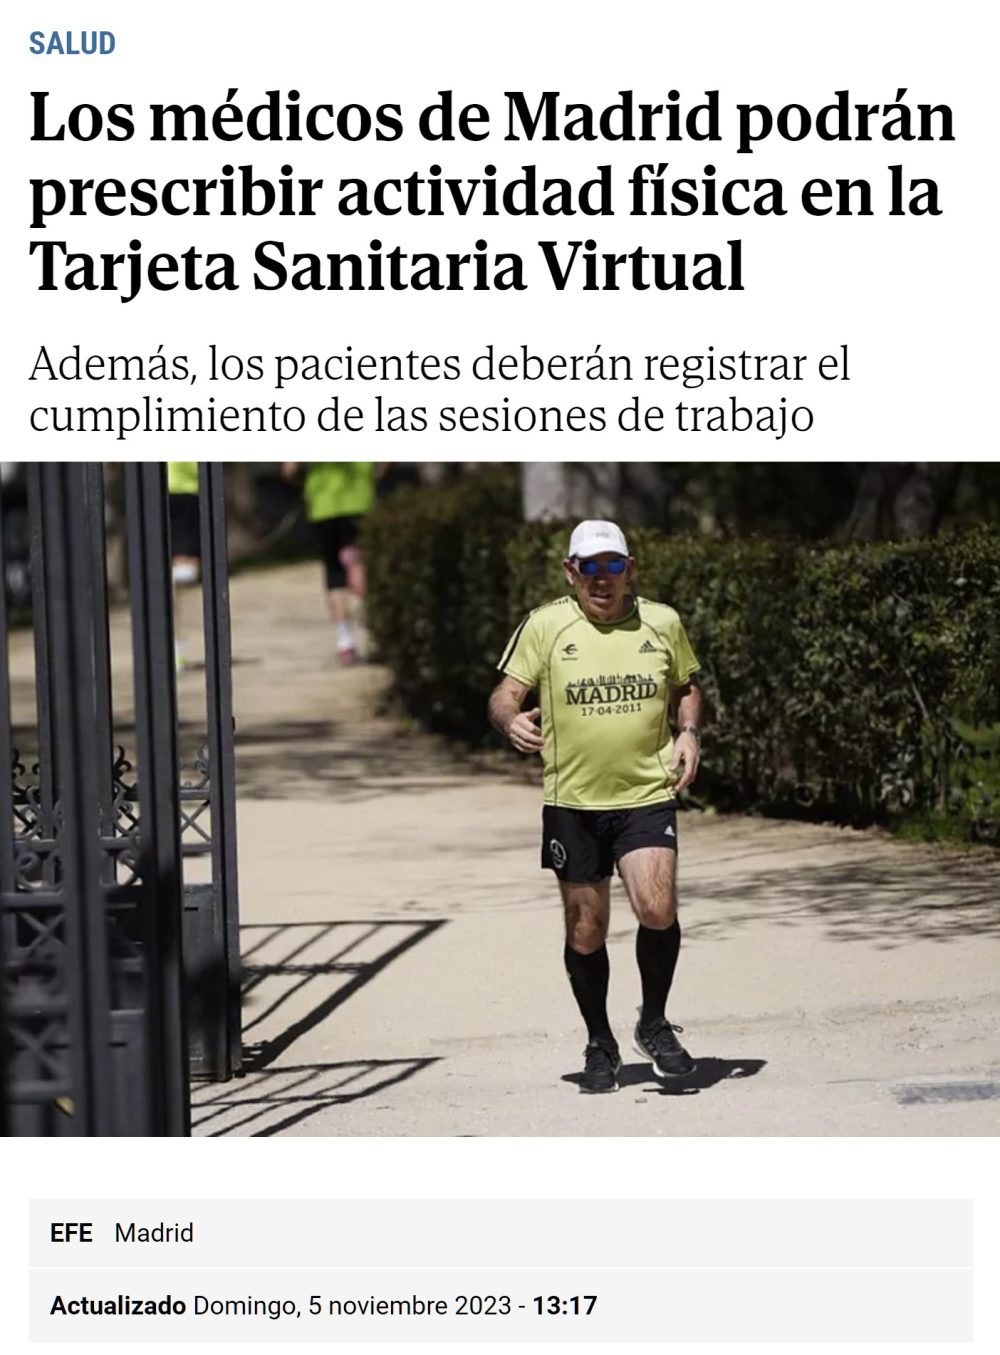 Los médicos de Madrid podrán prescribir "actividad física" en la tarjeta sanitaria virtual